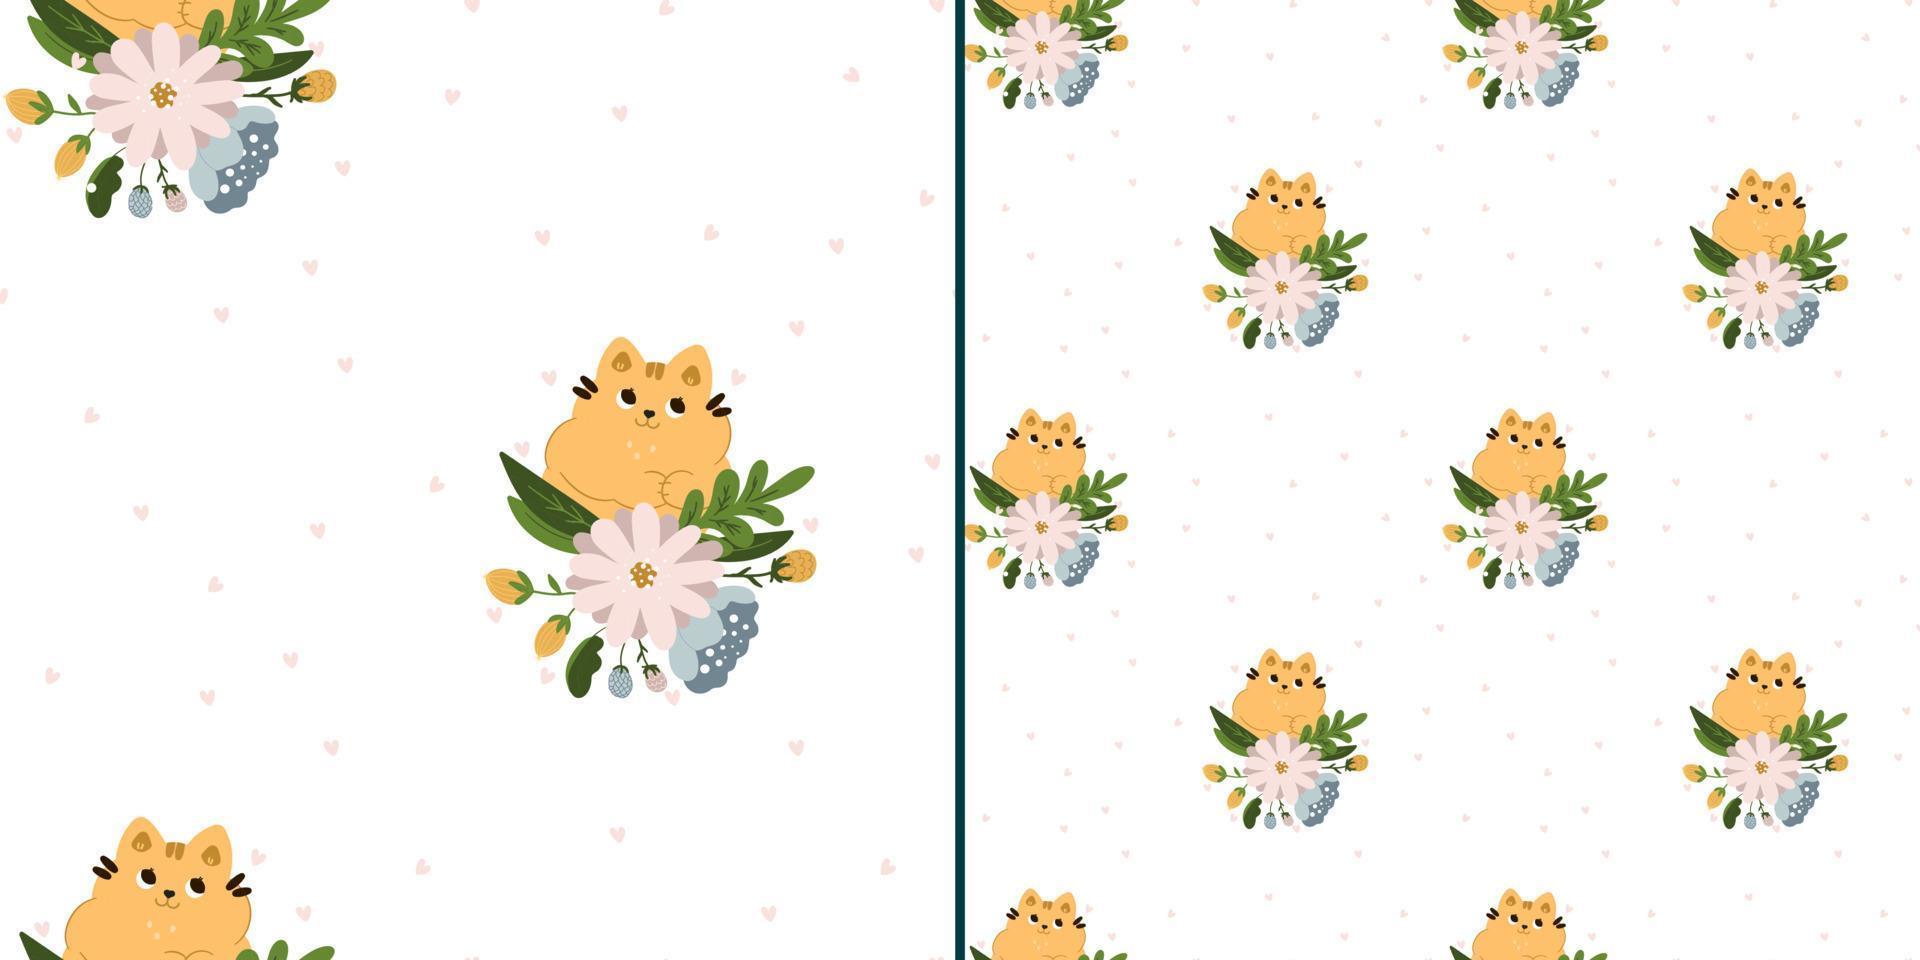 naadloze patroon met schattige katten in bloemen op een witte achtergrond. kindertextuur in scandinavische stijl voor stof, textiel, kleding, kinderkamerdecoratie. vector illustratie